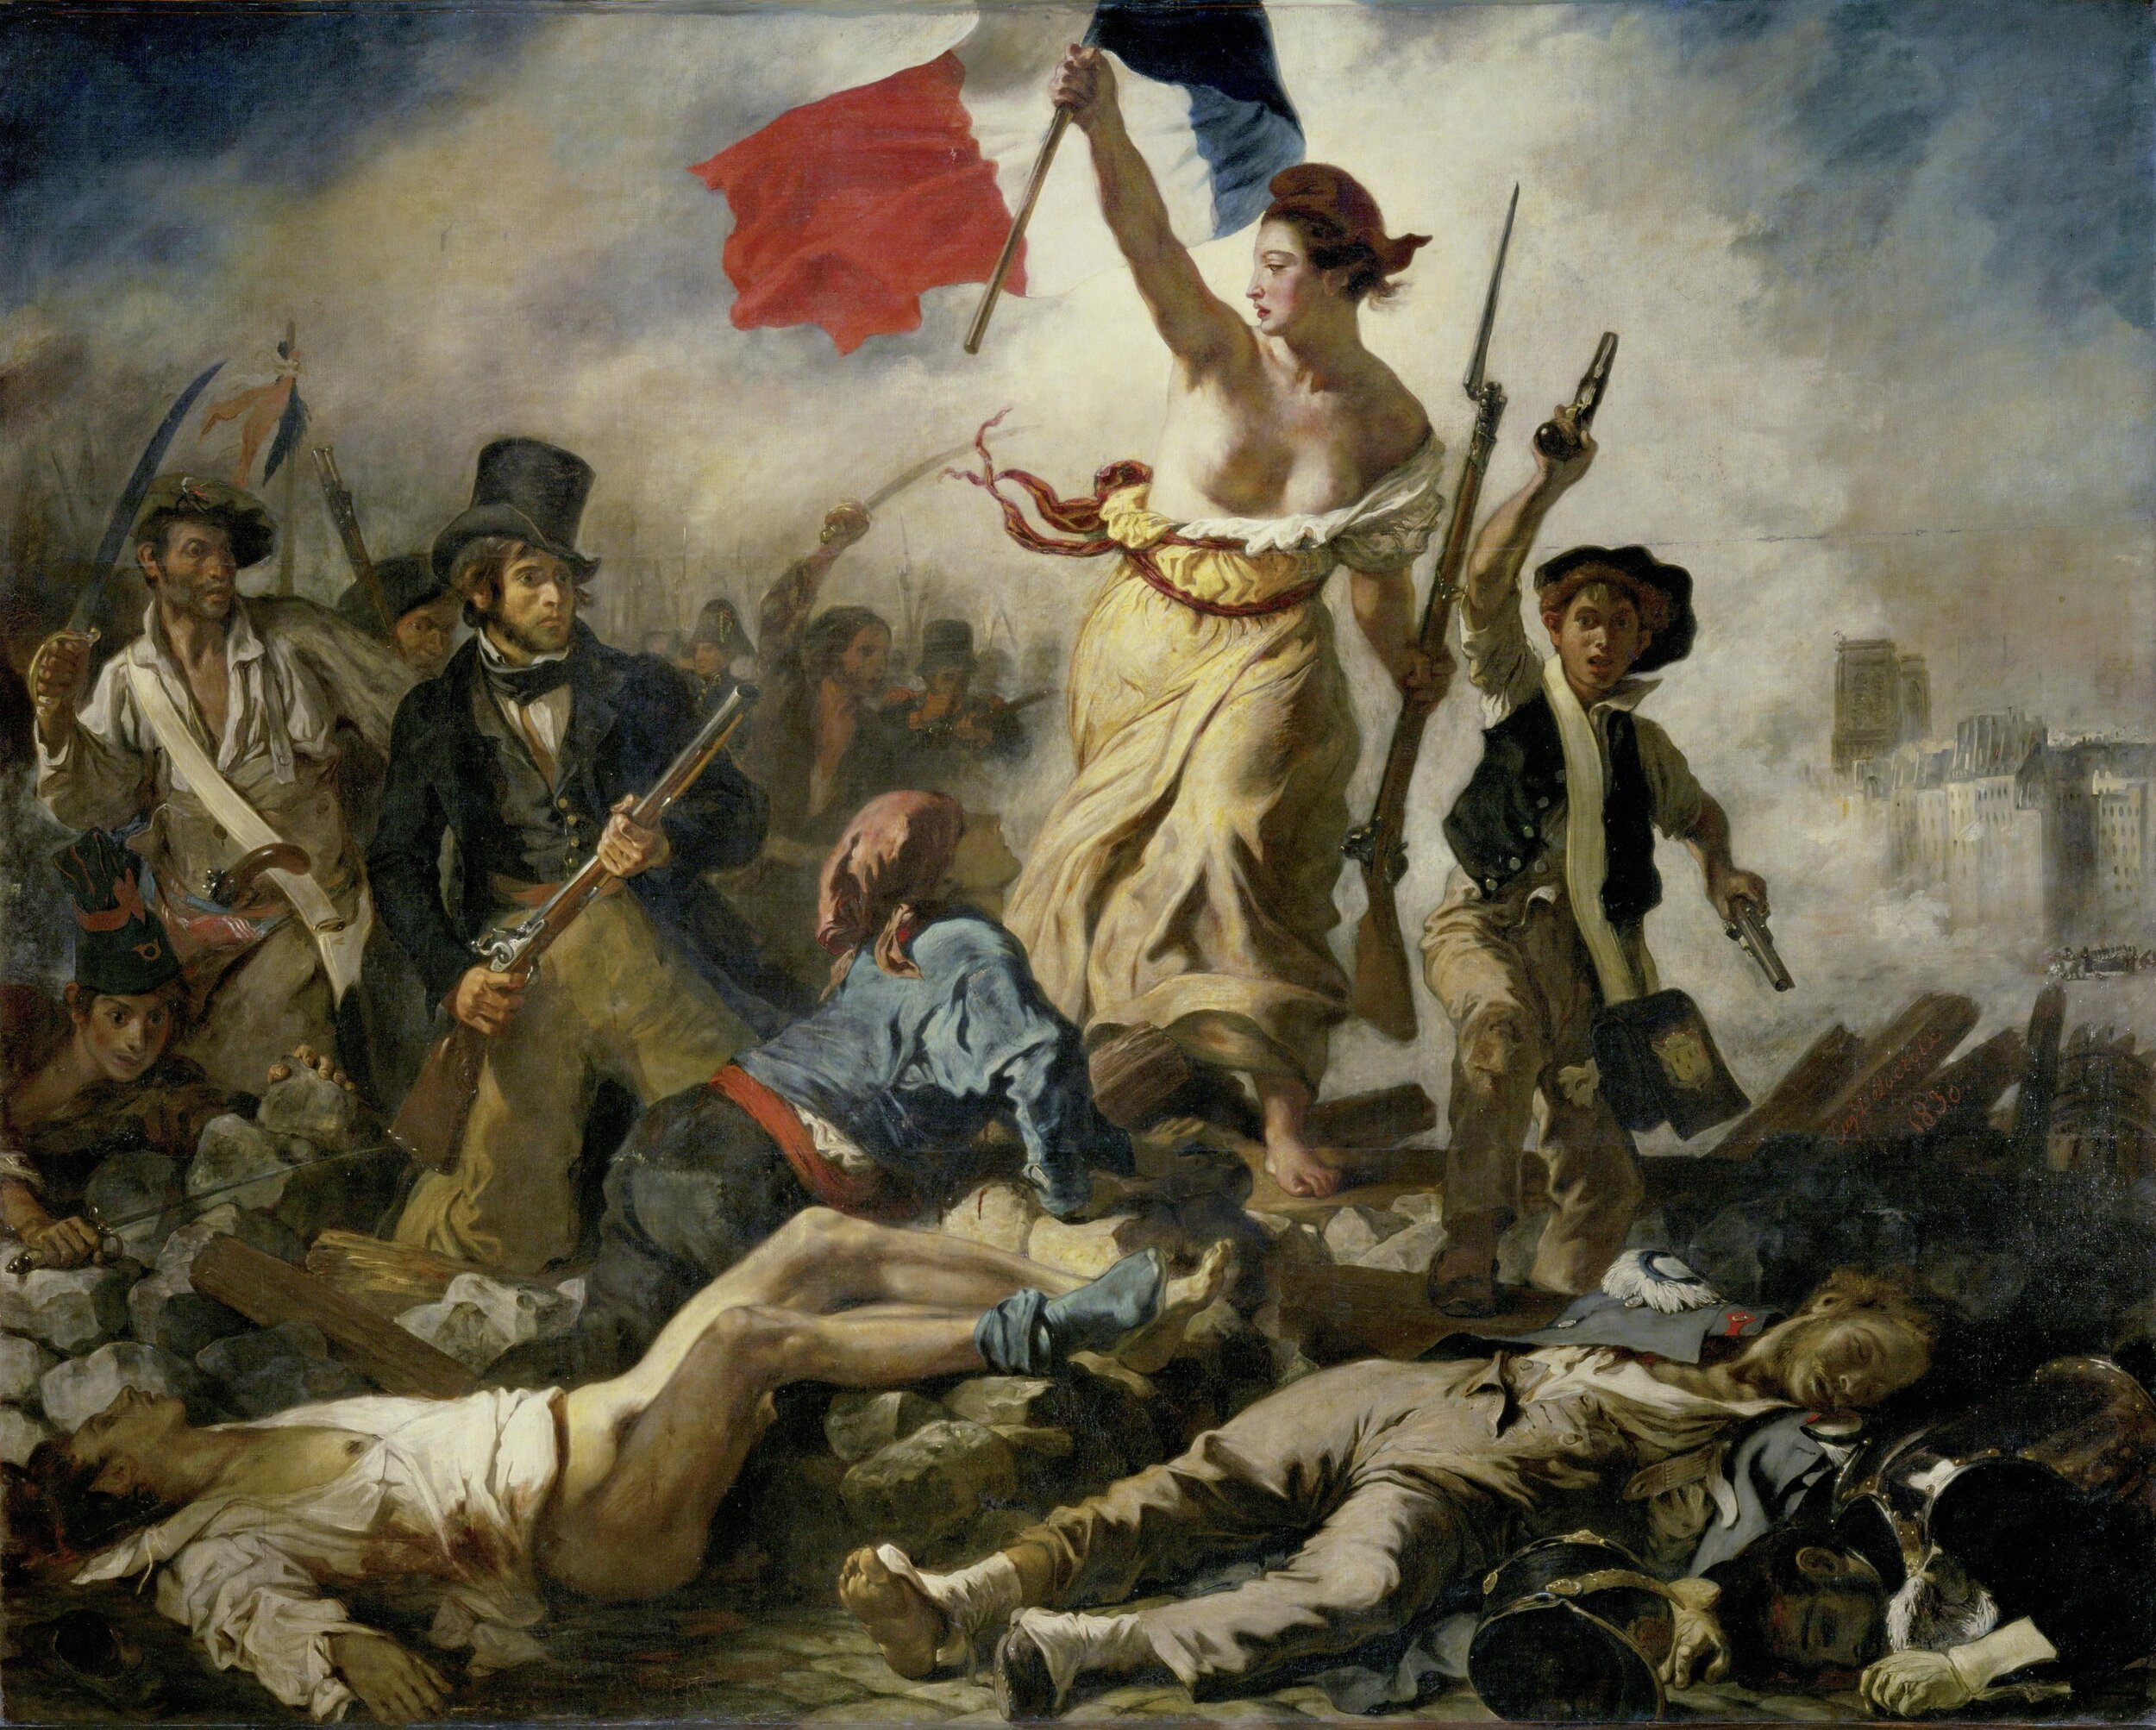 By Eugène Delacroix - Erich Lessing Culture and Fine Arts Archives via artsy.net, Public Domain